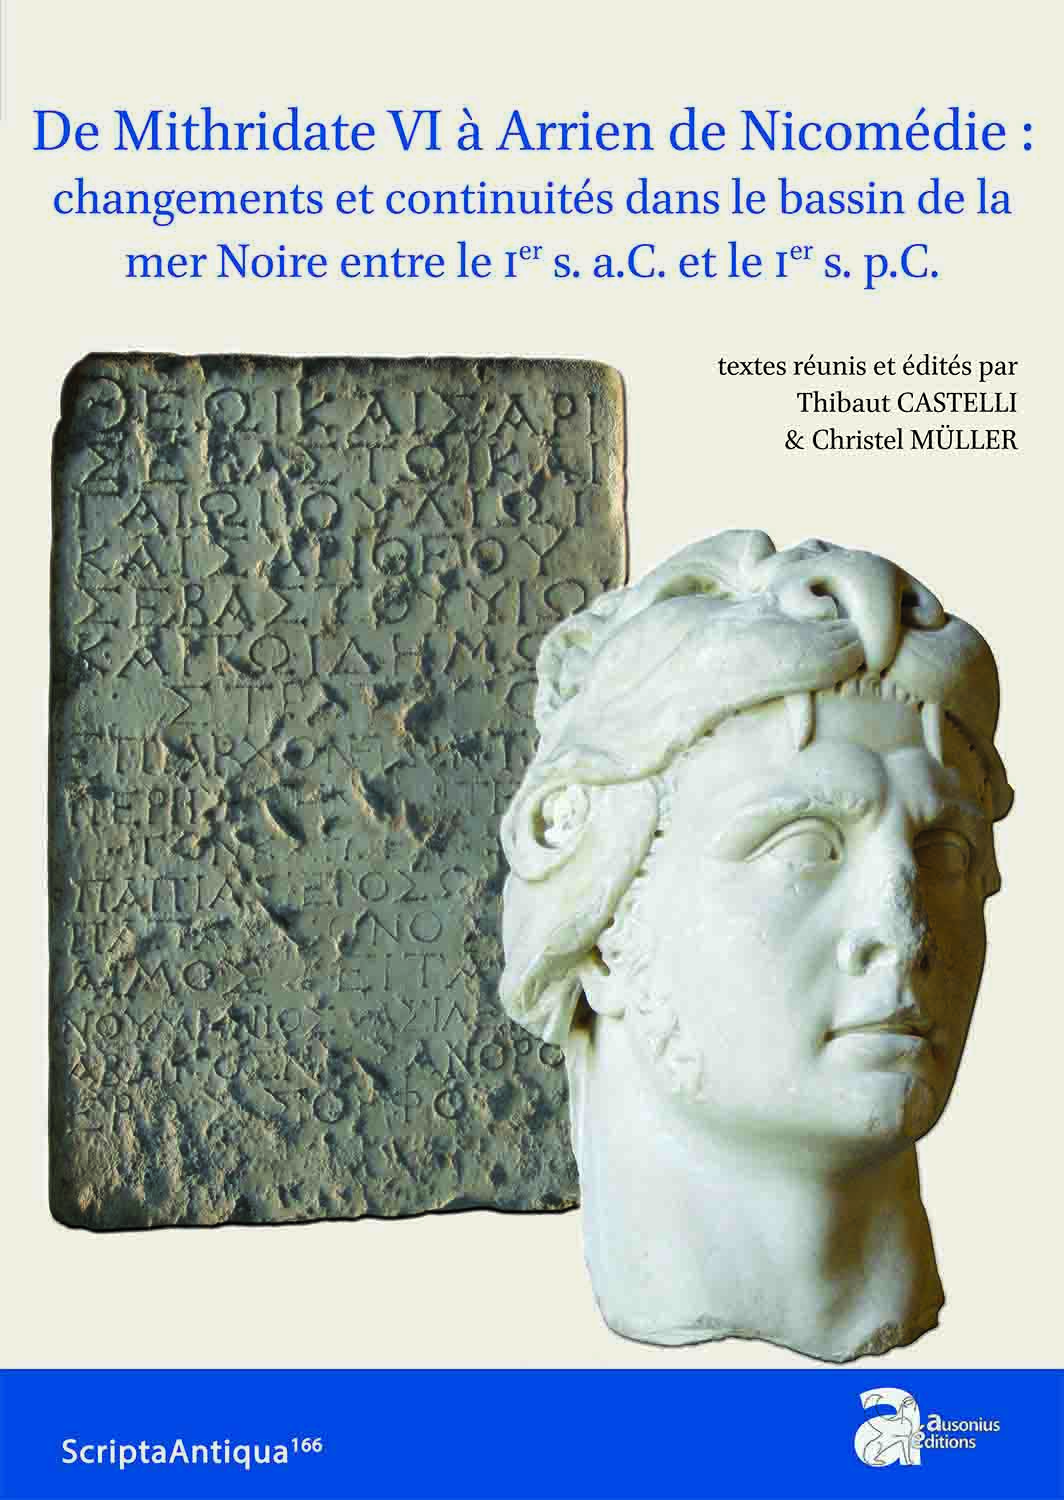 De Mithridate VI à Arrien de Nicomédie : changements et continuités dans le bassin de la mer Noire entre le Ier s. a.C. et le Ier s. p.C., 2023, 264 p.